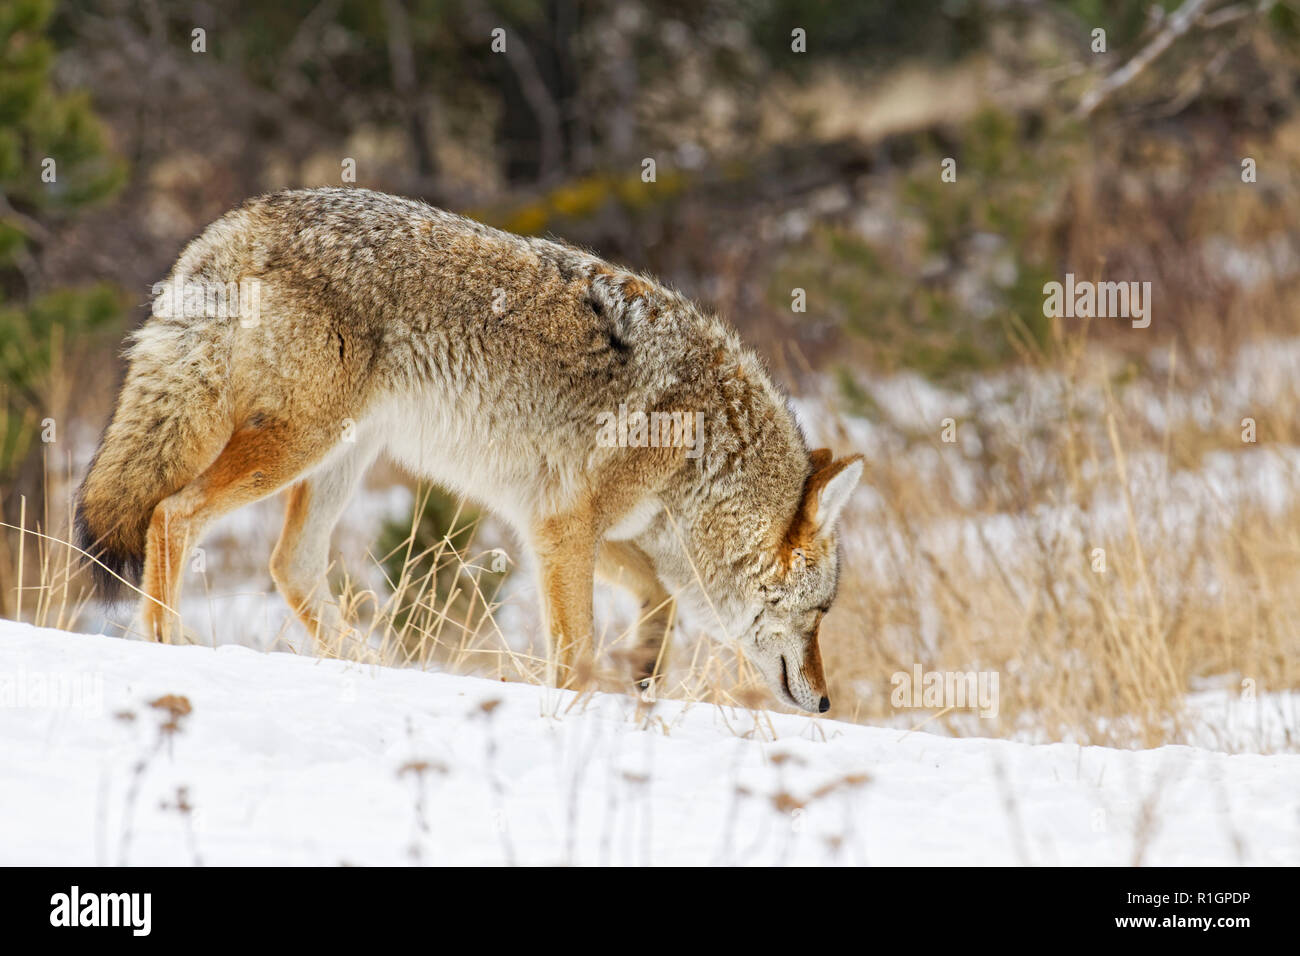 42,757.09830 Nahaufnahme von Erwachsenen coyote langsam Breitseite & sniffing Boden in kalten schneereichen Winter schnee Wald Bürste Sträucher Stockfoto